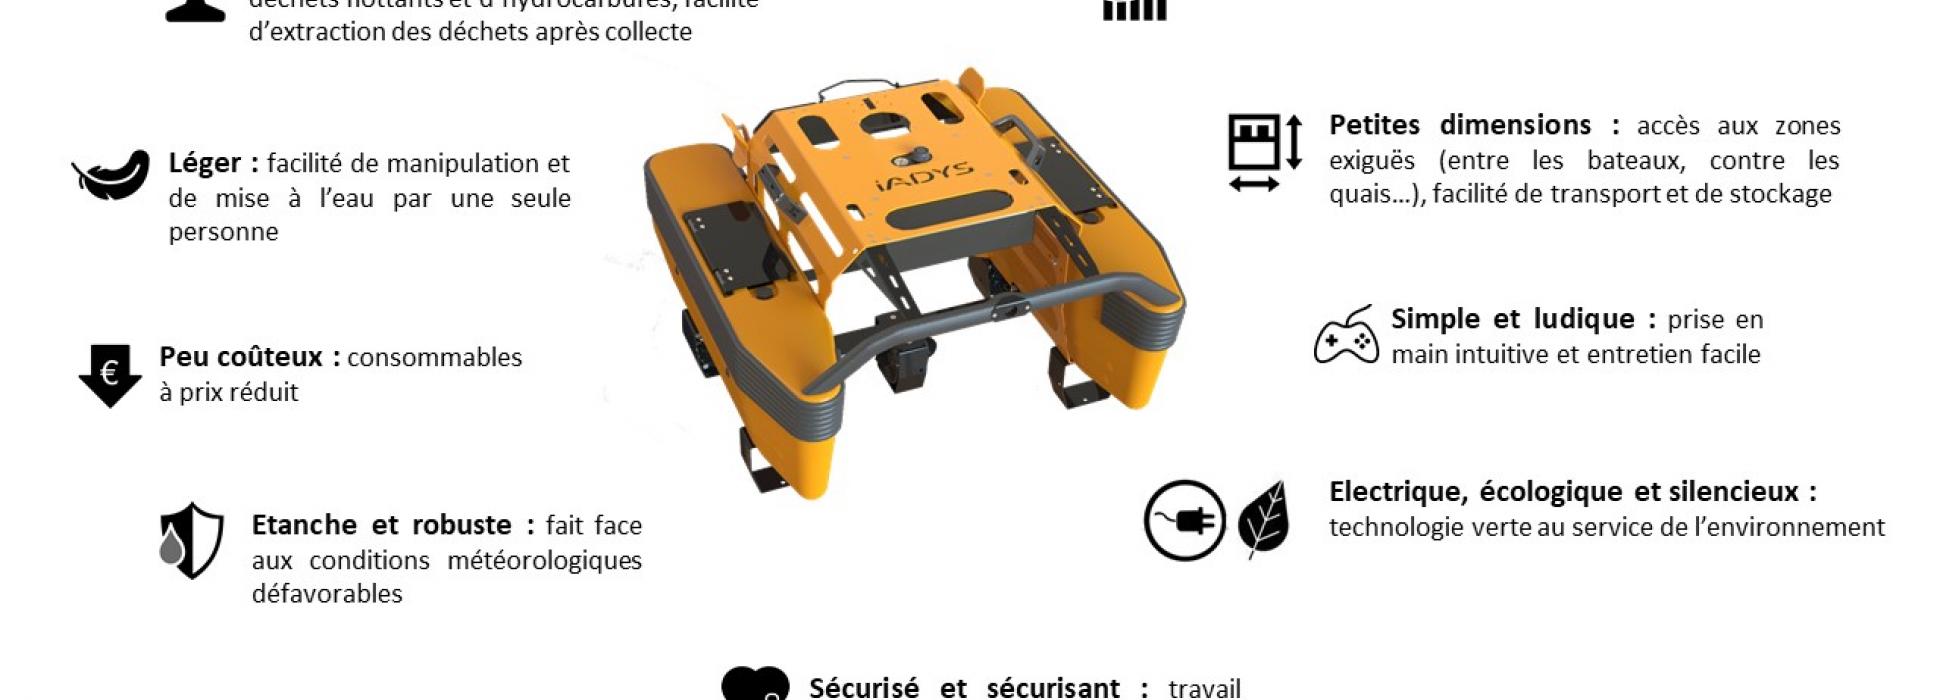 El robot acuático Jellyfishbot pronto podría limpiar las aguas del puerto de Cherbourg